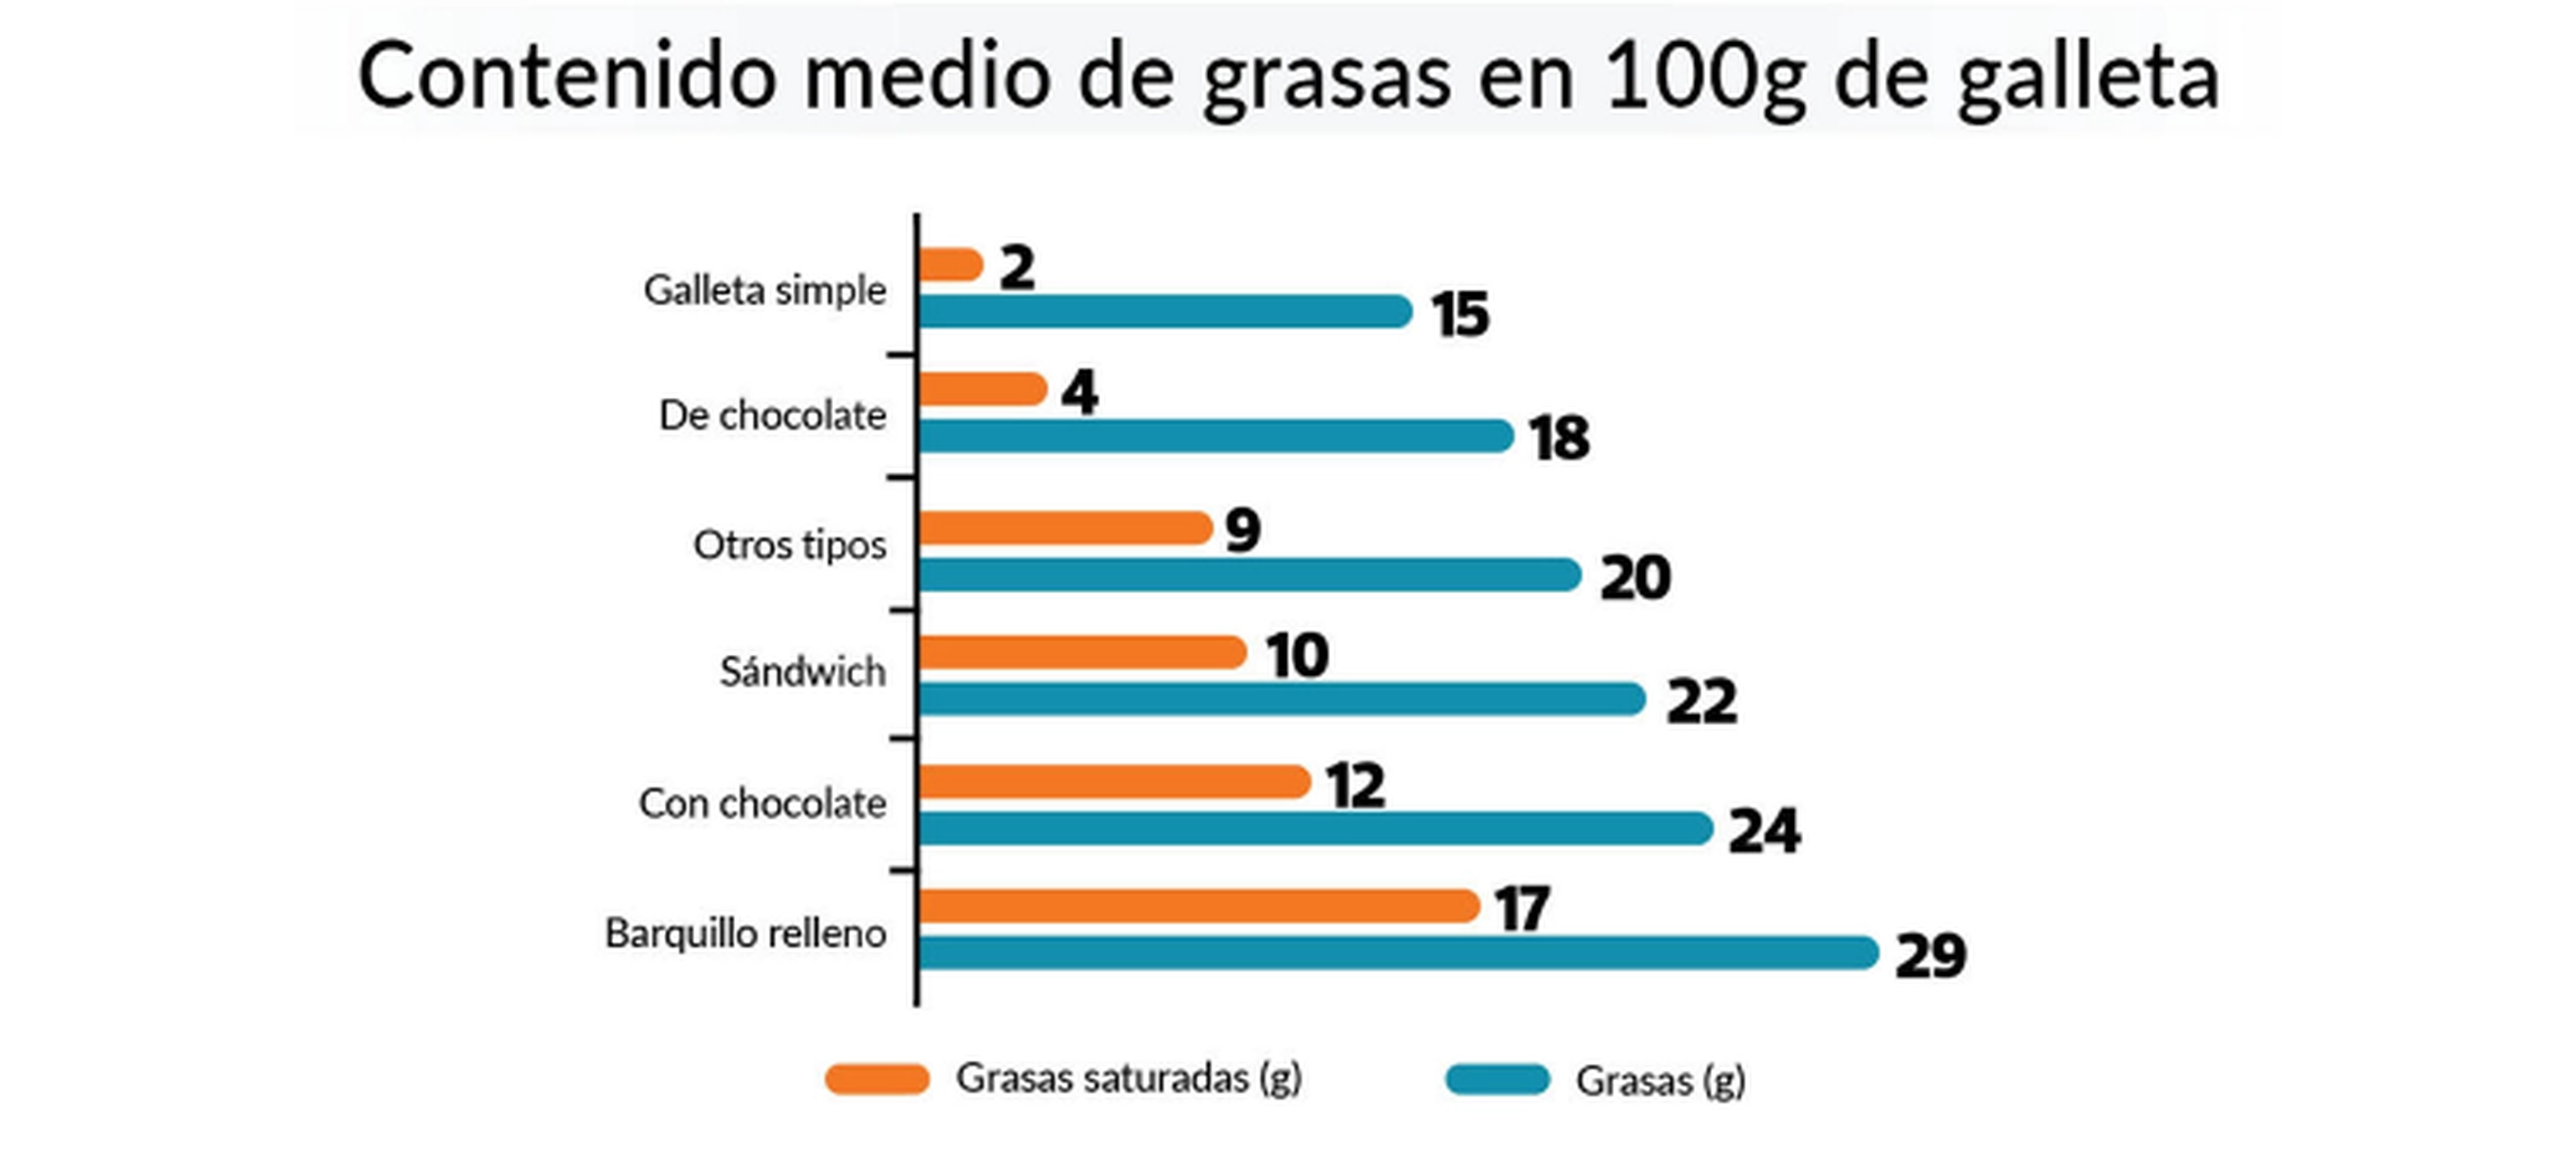 Datos extraídos del informe sobre galletas infantiles realizado por la OCU.